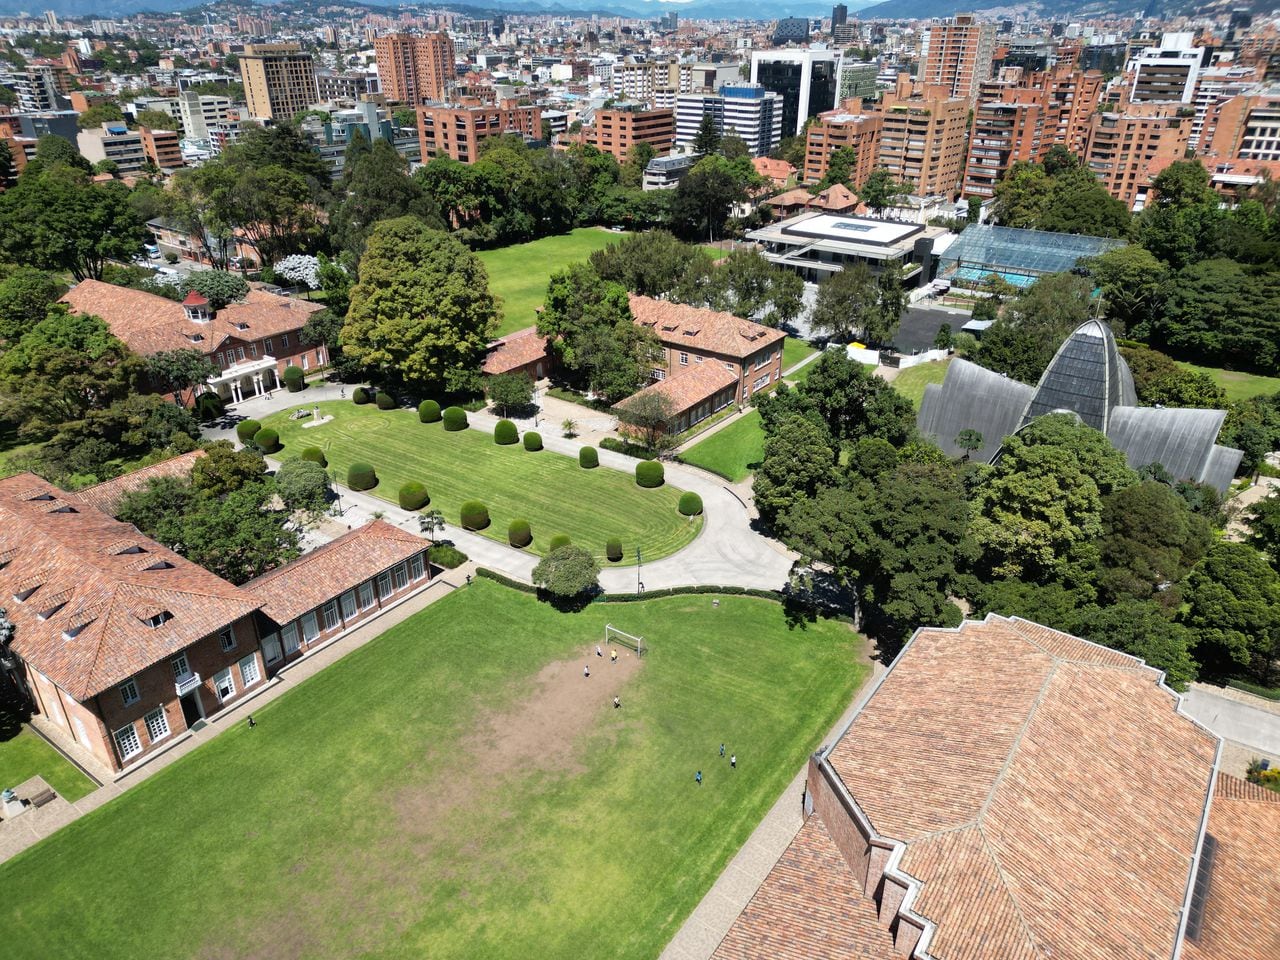 El Gimnasio Moderno cuenta con un campus de 60.000 metros cuadrados rodeado de naturaleza y enclavado en el centro financiero de Bogotá.